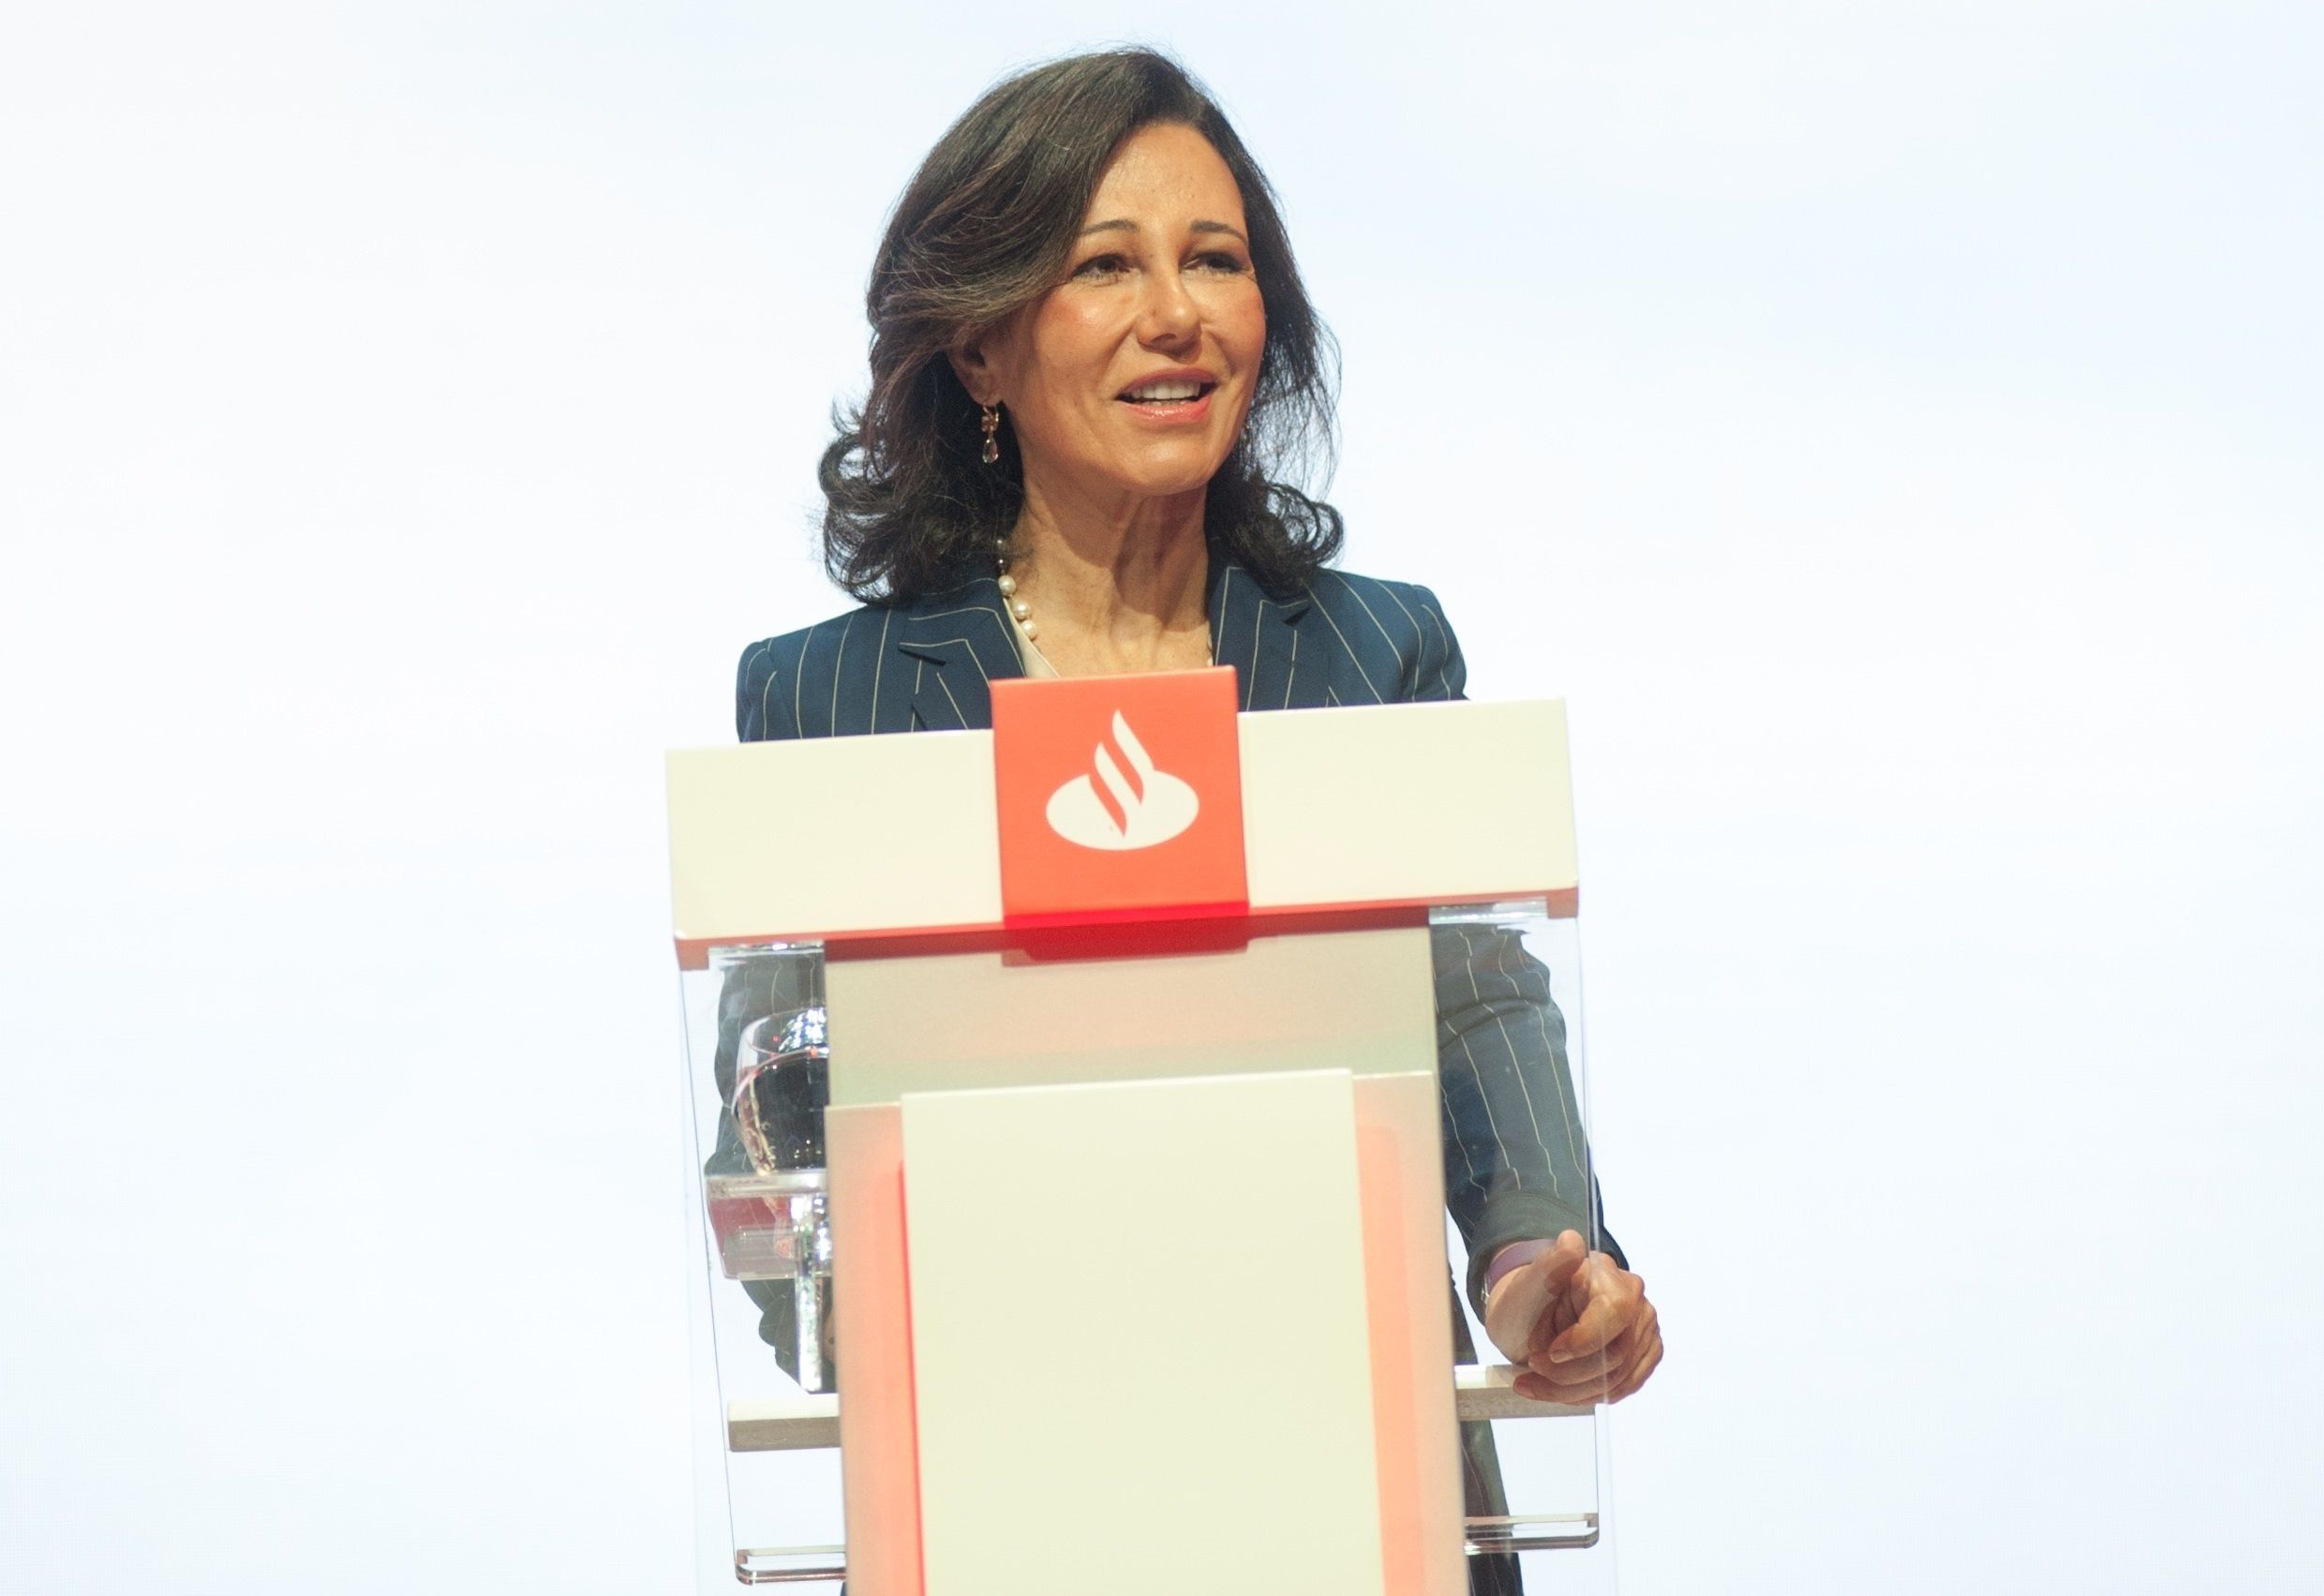 Ana Botín, presidenta del Santander. El banco tiene un 33% de consejeras